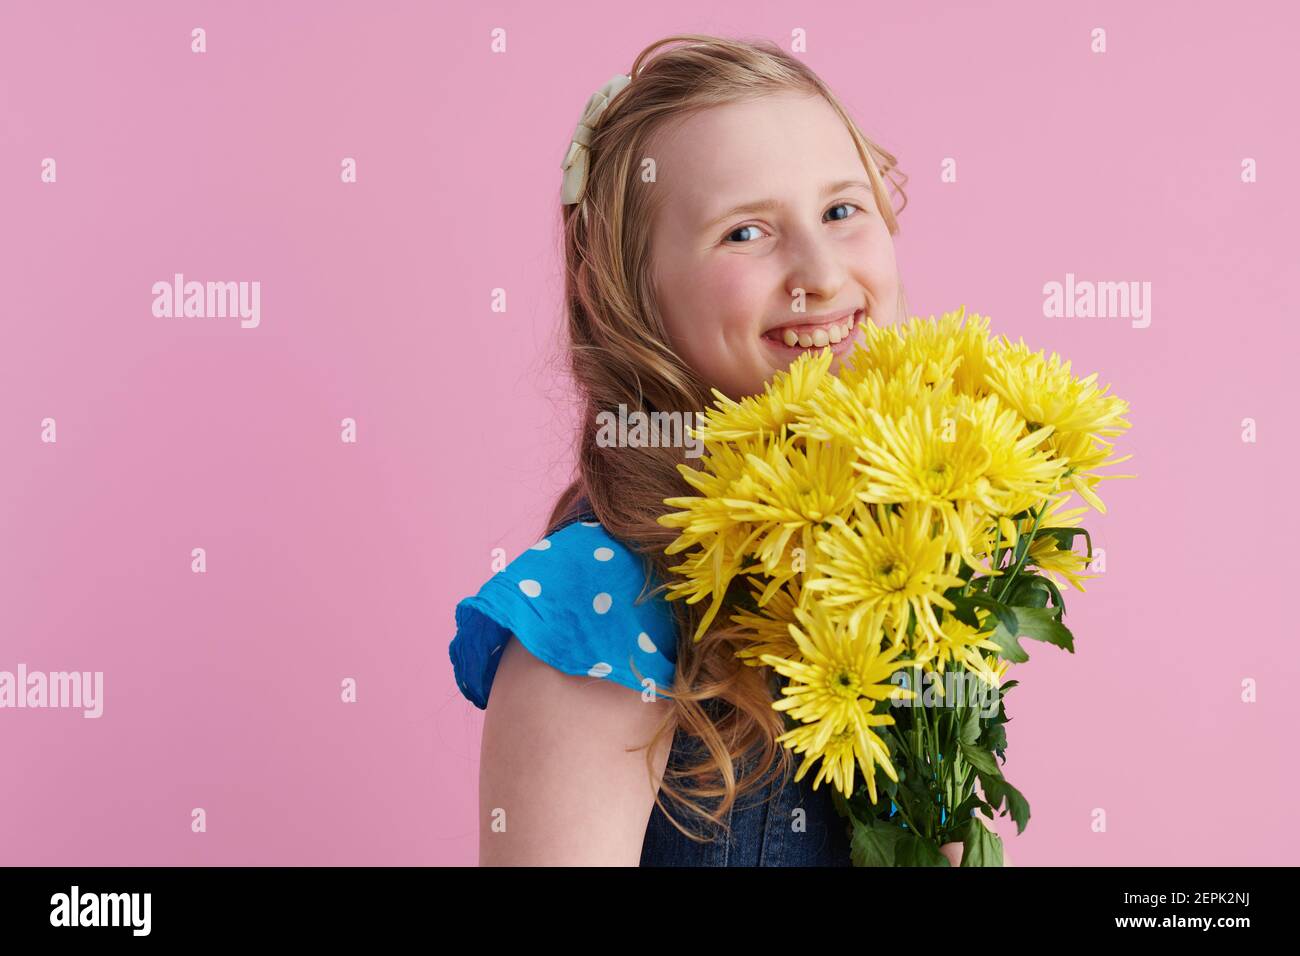 Portrait von glücklichen modernen Mädchen mit langen welligen blonden Haaren mit gelben Chrysanthemen Blumen vor rosa Hintergrund. Stockfoto